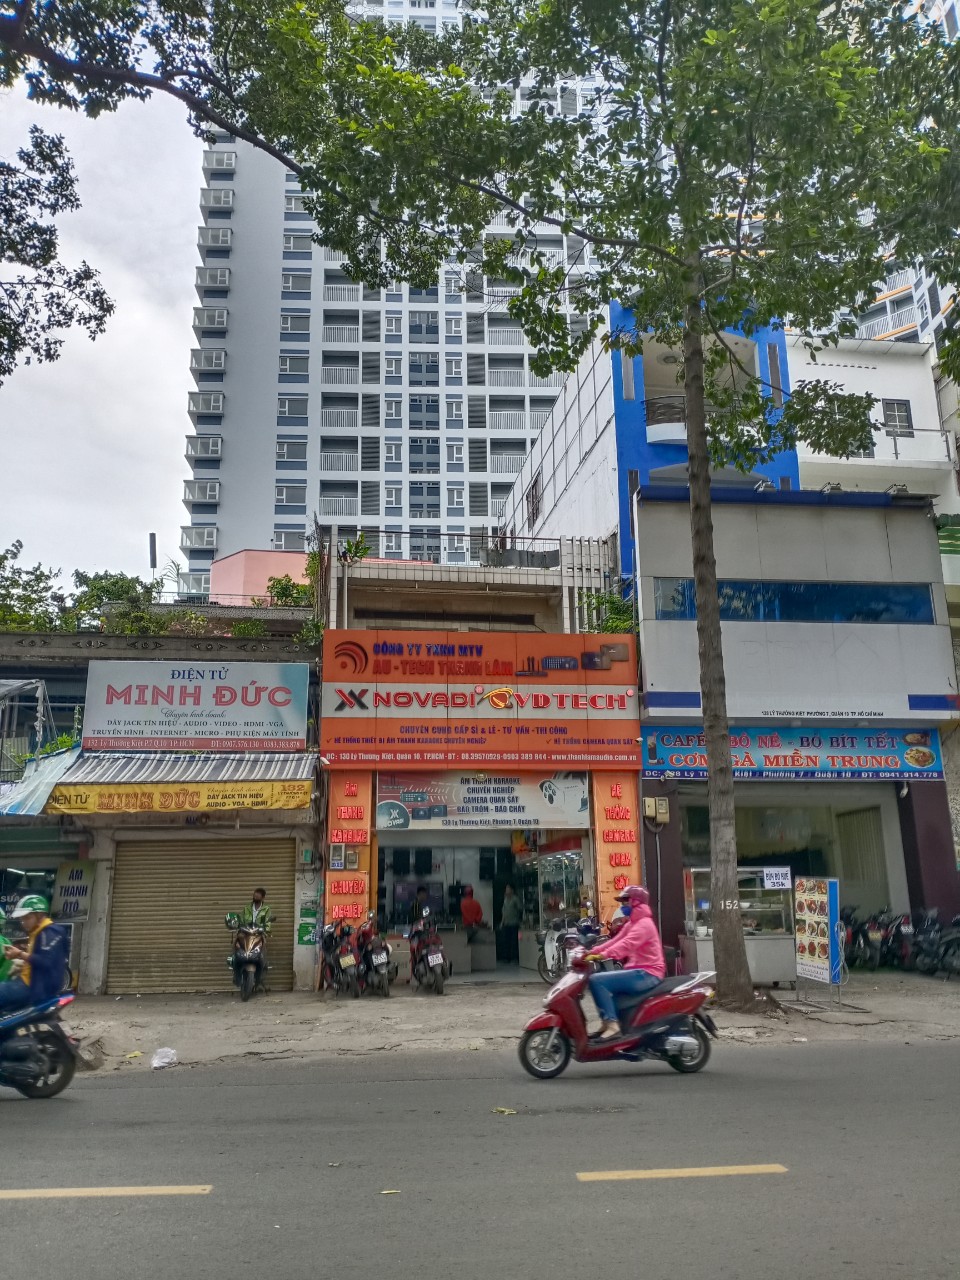 Bán nhà đường Nguyễn Thái Học, Quận 1. Ngang 5,5m dài 22m. Giá bán; 45 tỷ. CC: 0931303688